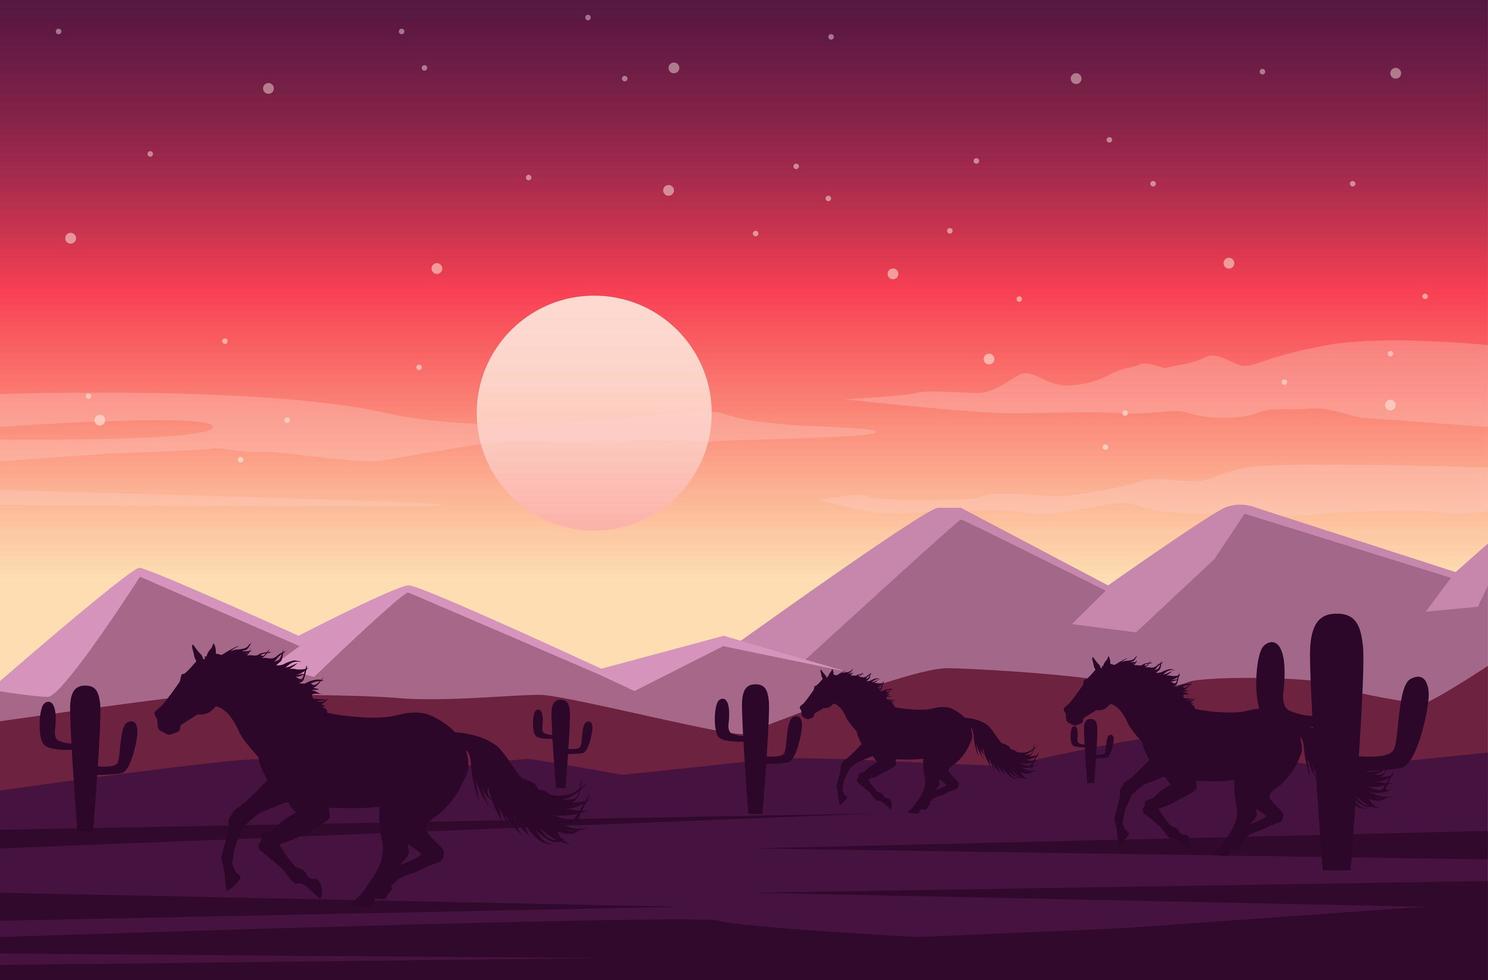 wild west sunset desert scene with horses running vector